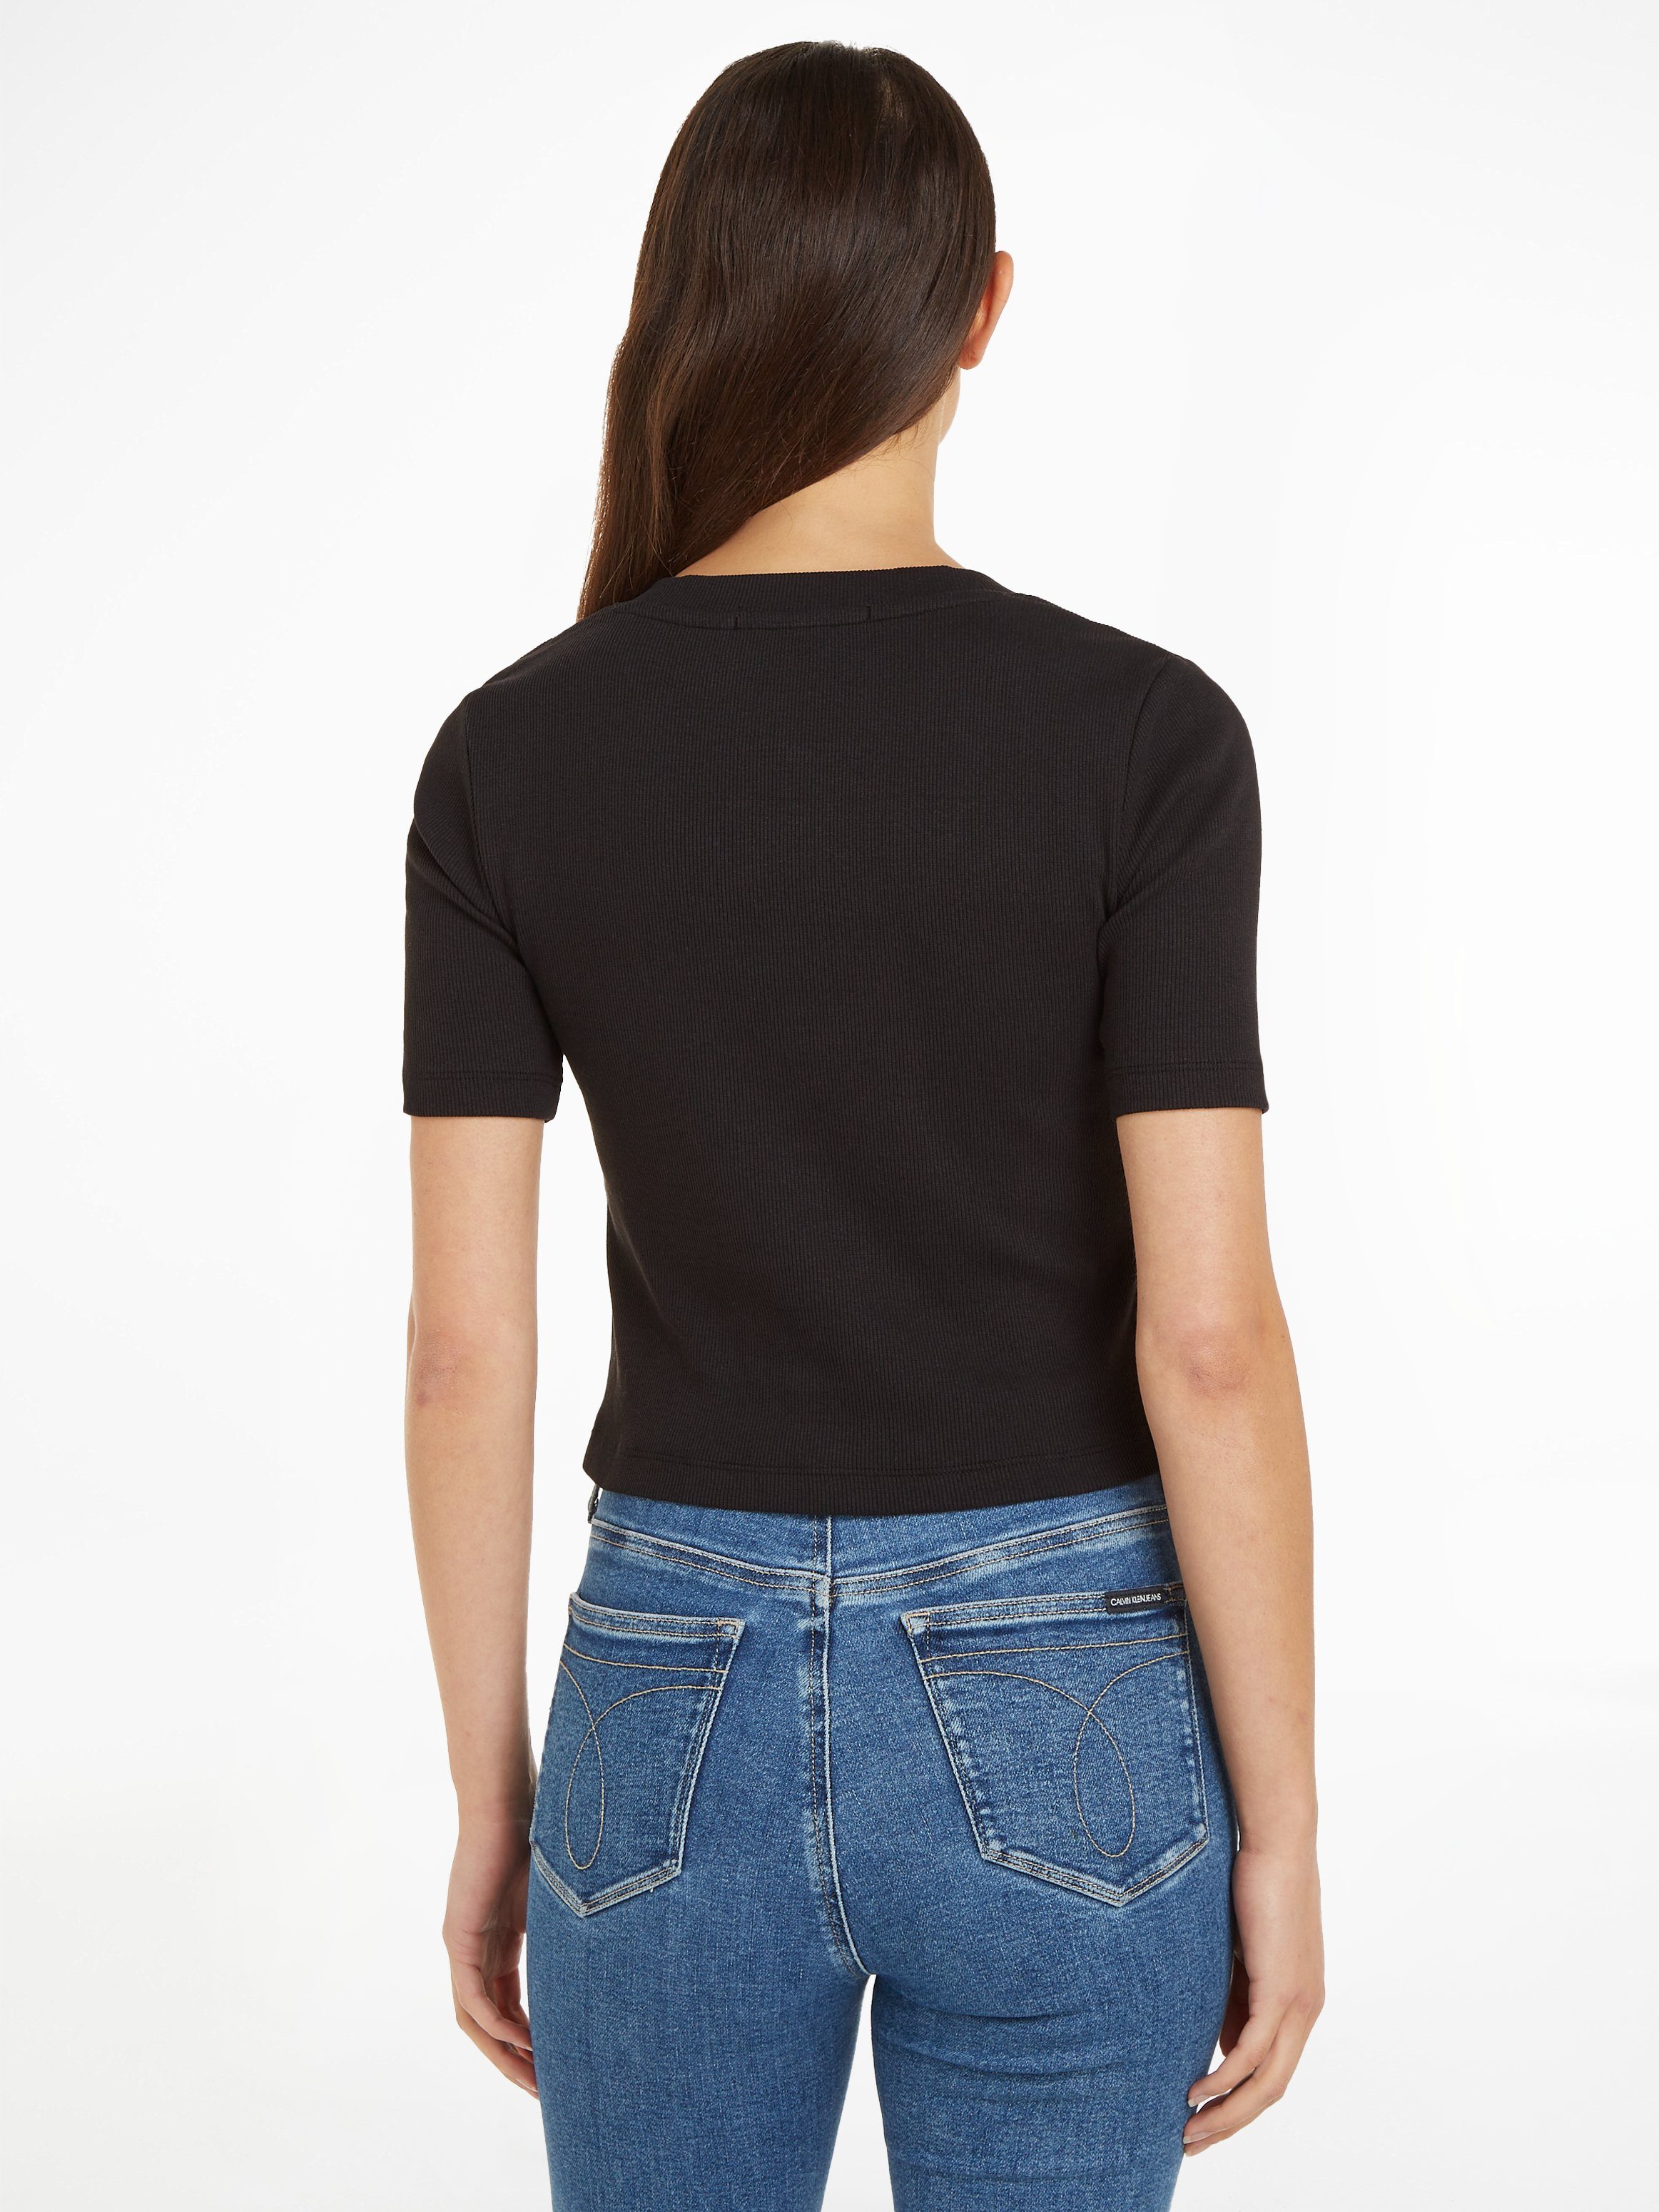 Klein V-Shirt Jeans schwarz Calvin